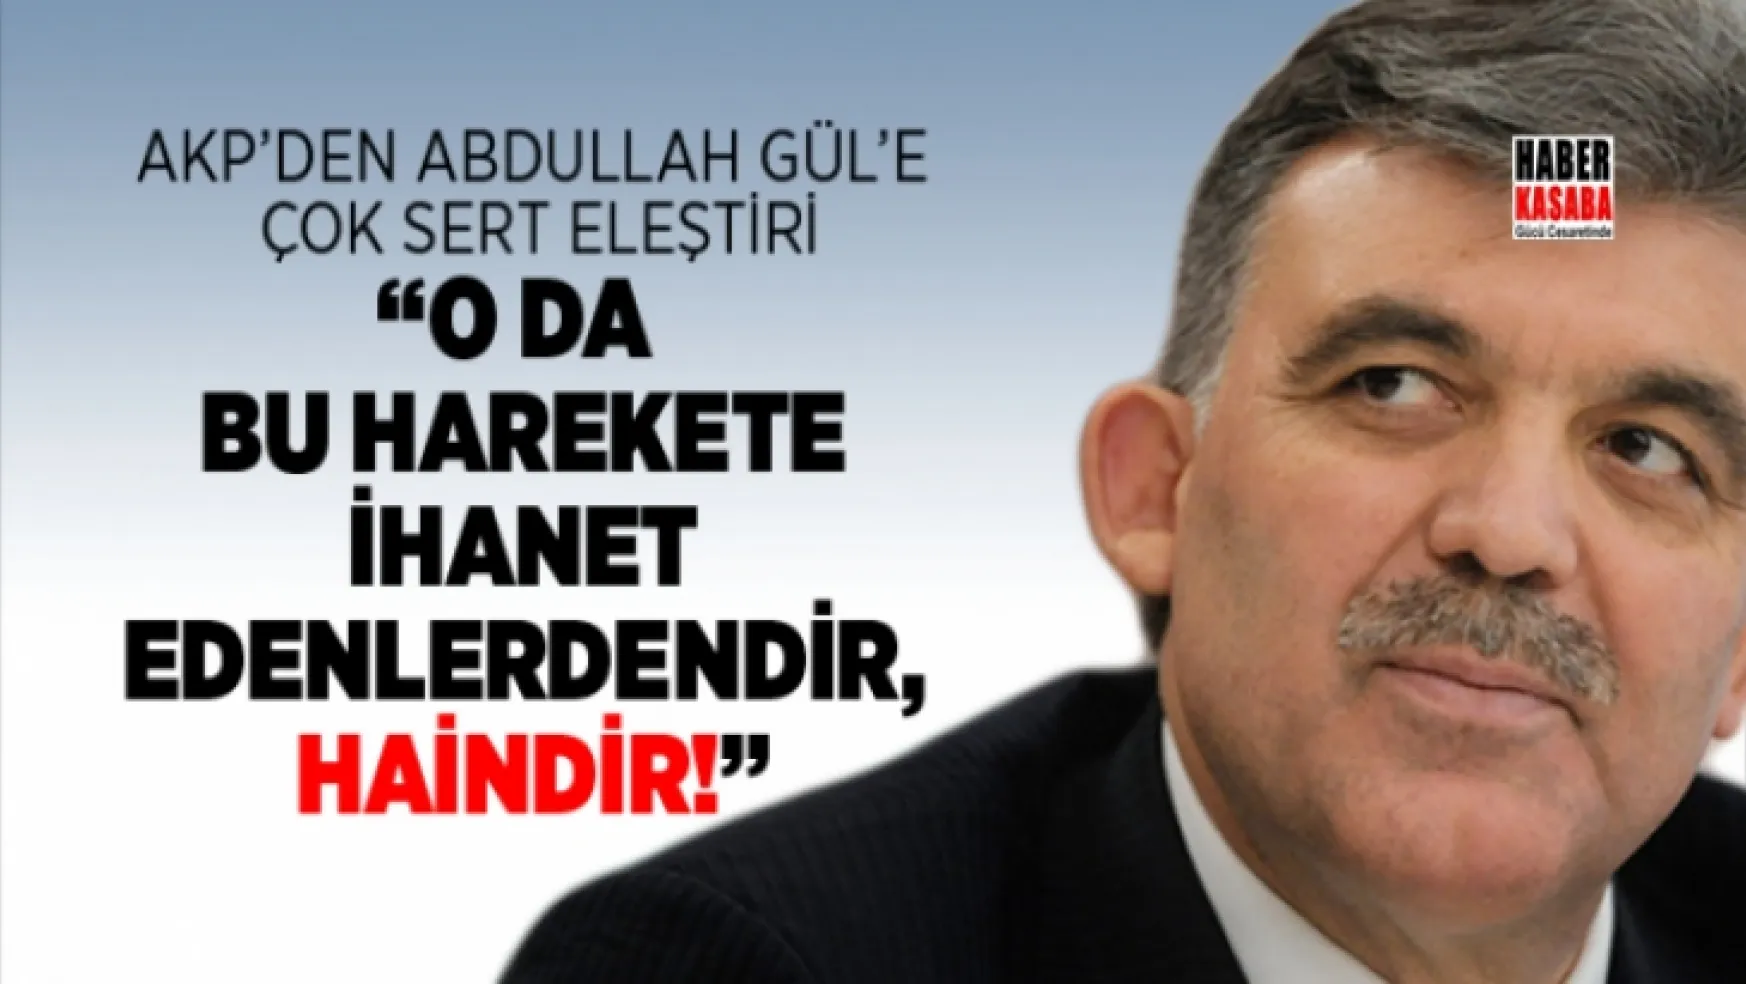 AKP'den Abdullah Gül'e çok sert eleştiri!... O bu harekete ihanet edenlerdendir, Haindir!'